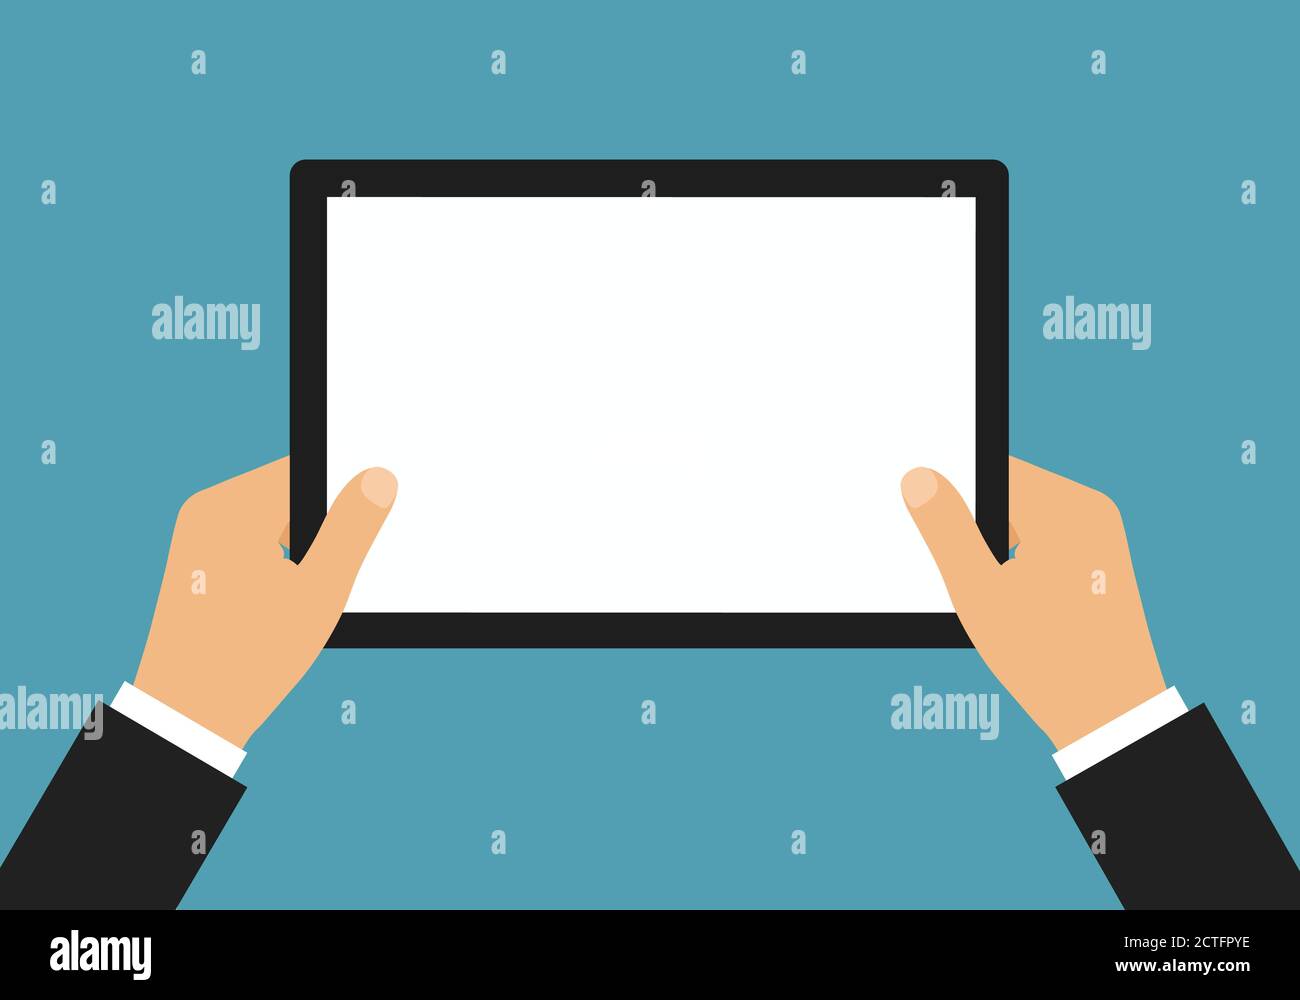 Illustrazione dal design piatto delle mani del manager in un tablet che tiene la tuta con schermo a sfioramento bianco vuoto e spazio per il testo - vettore Illustrazione Vettoriale